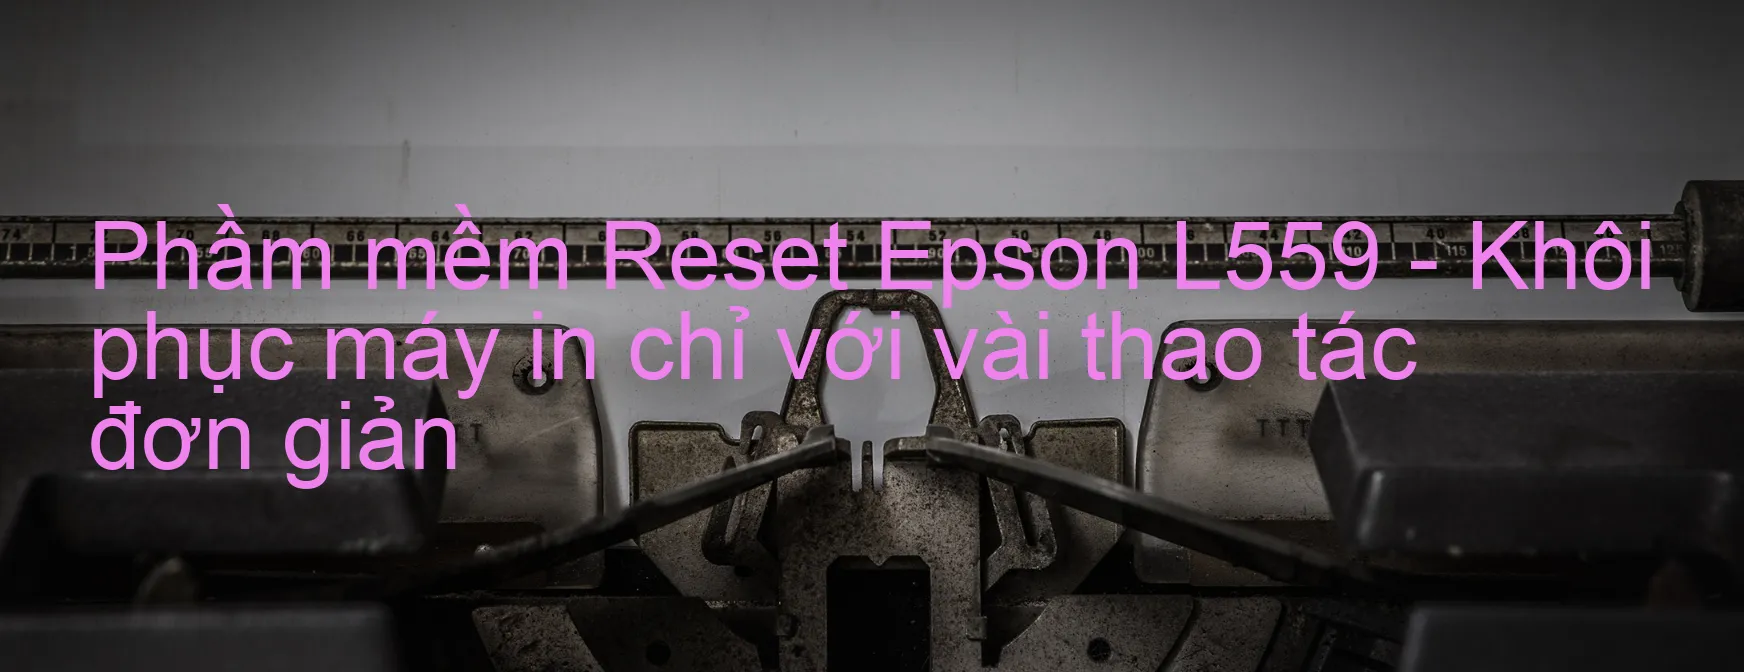 Phầm mềm Reset Epson L559 - Khôi phục máy in chỉ với vài thao tác đơn giản